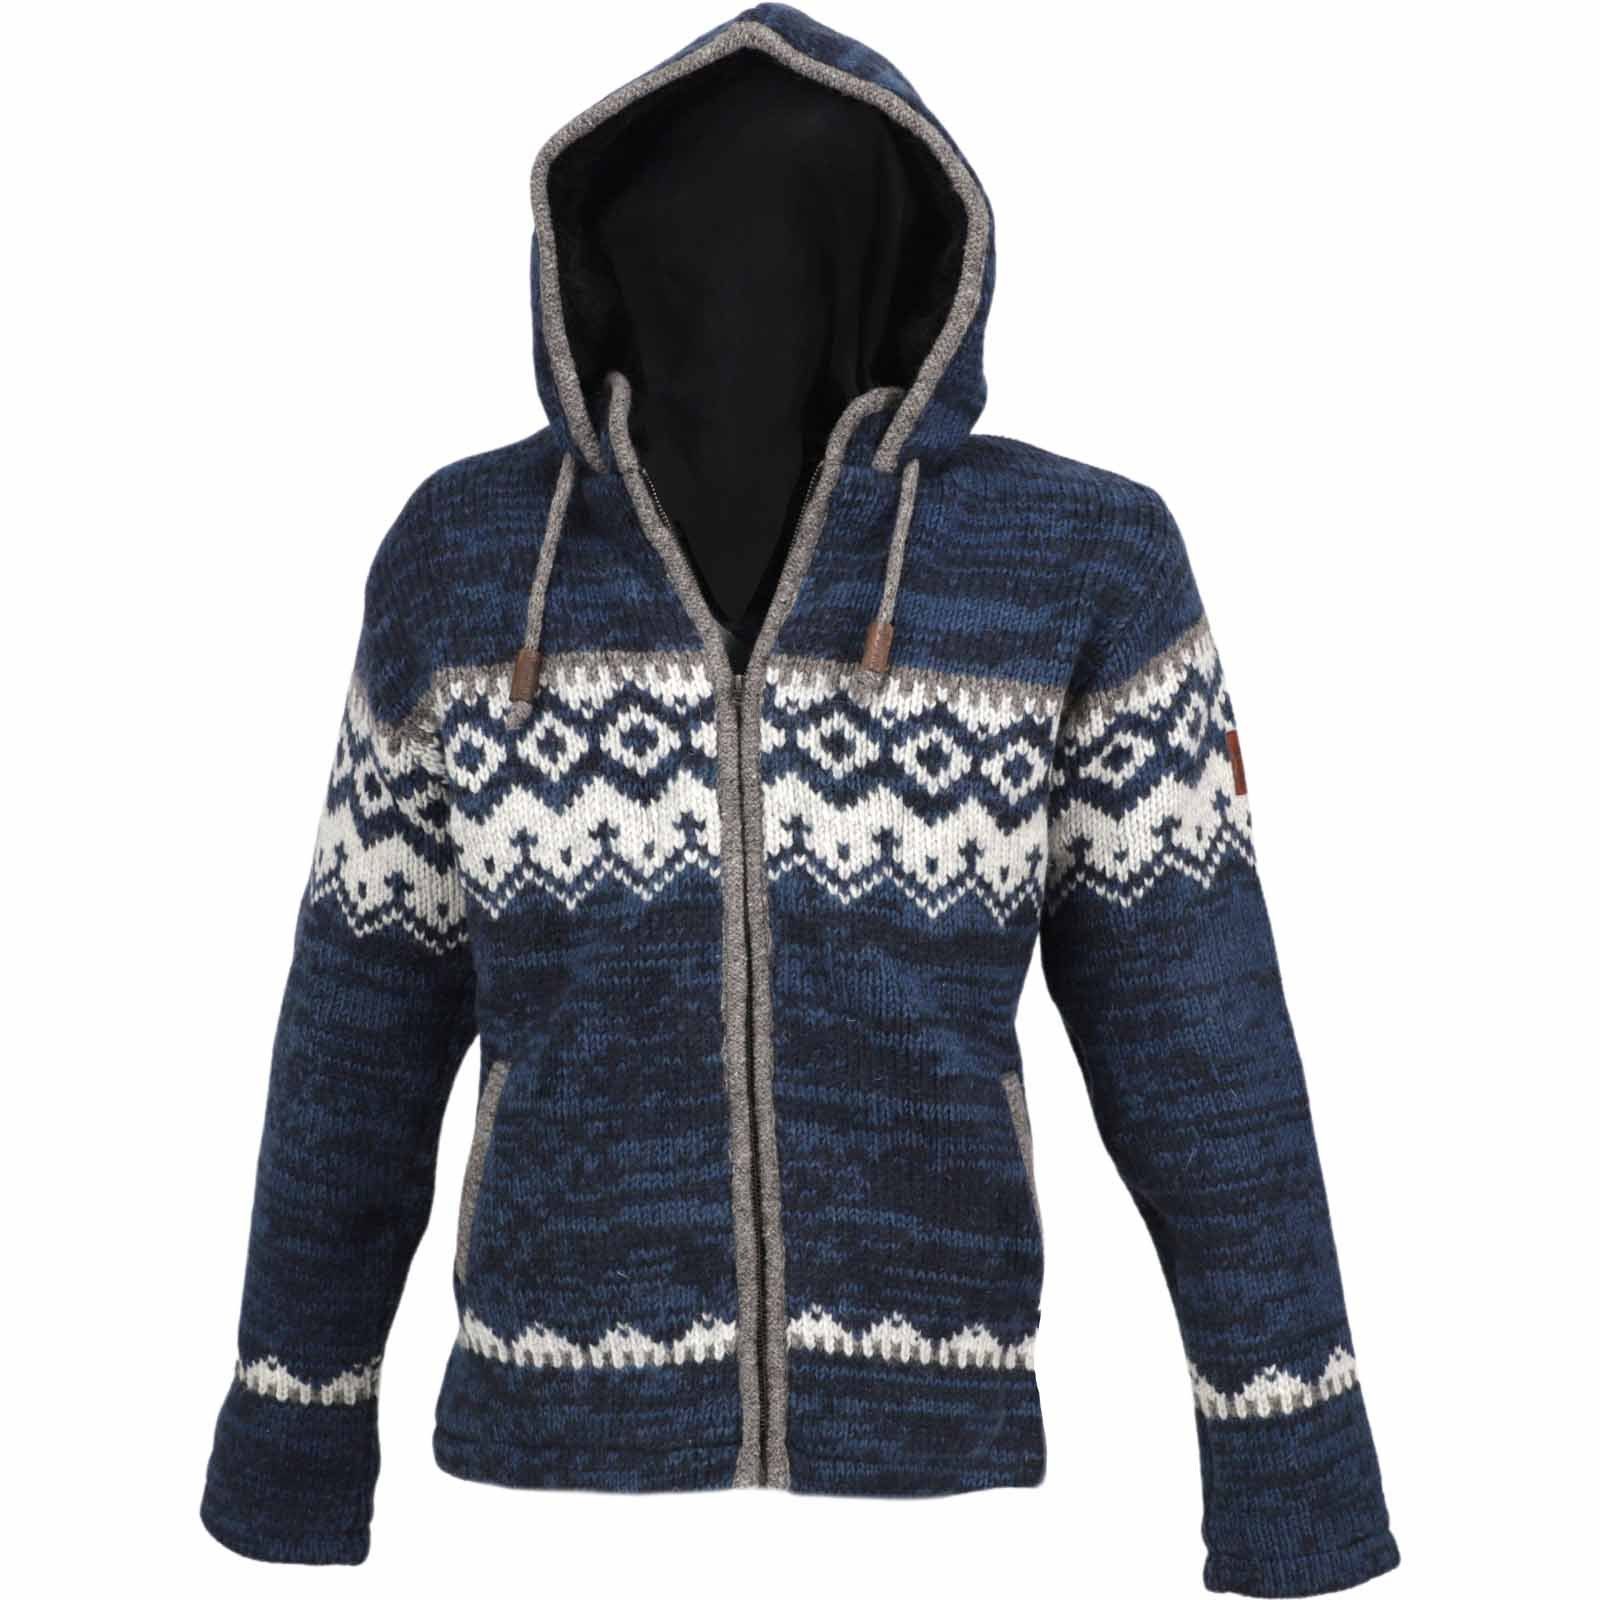 KUNST UND MAGIE Strickjacke »Herren Strickjacke Schurwolle Klassich  Nordisches Muster Wolle Jacke mit Kapuze« online kaufen | OTTO